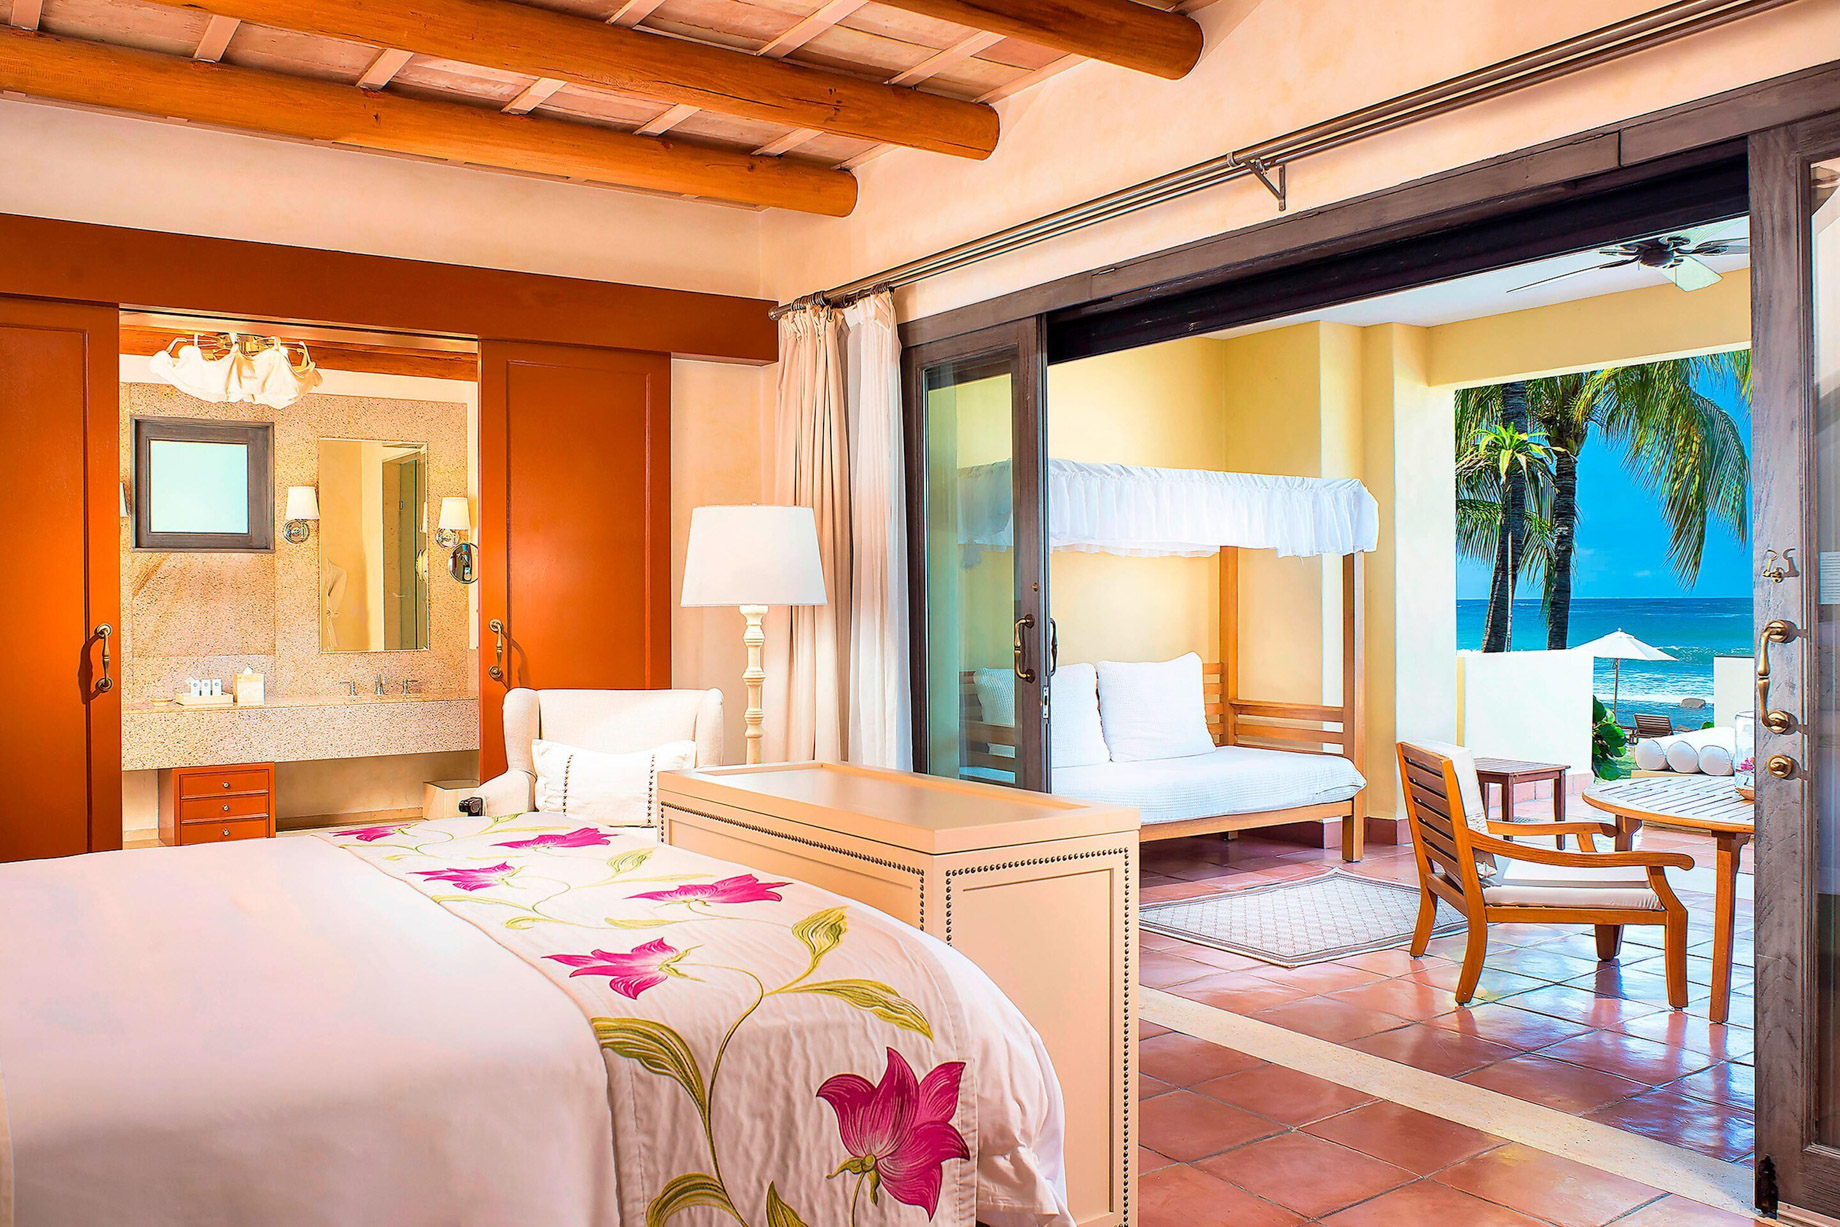 The St. Regis Punta Mita Resort – Nayarit, Mexico – Presidential Villa Master Bedroom